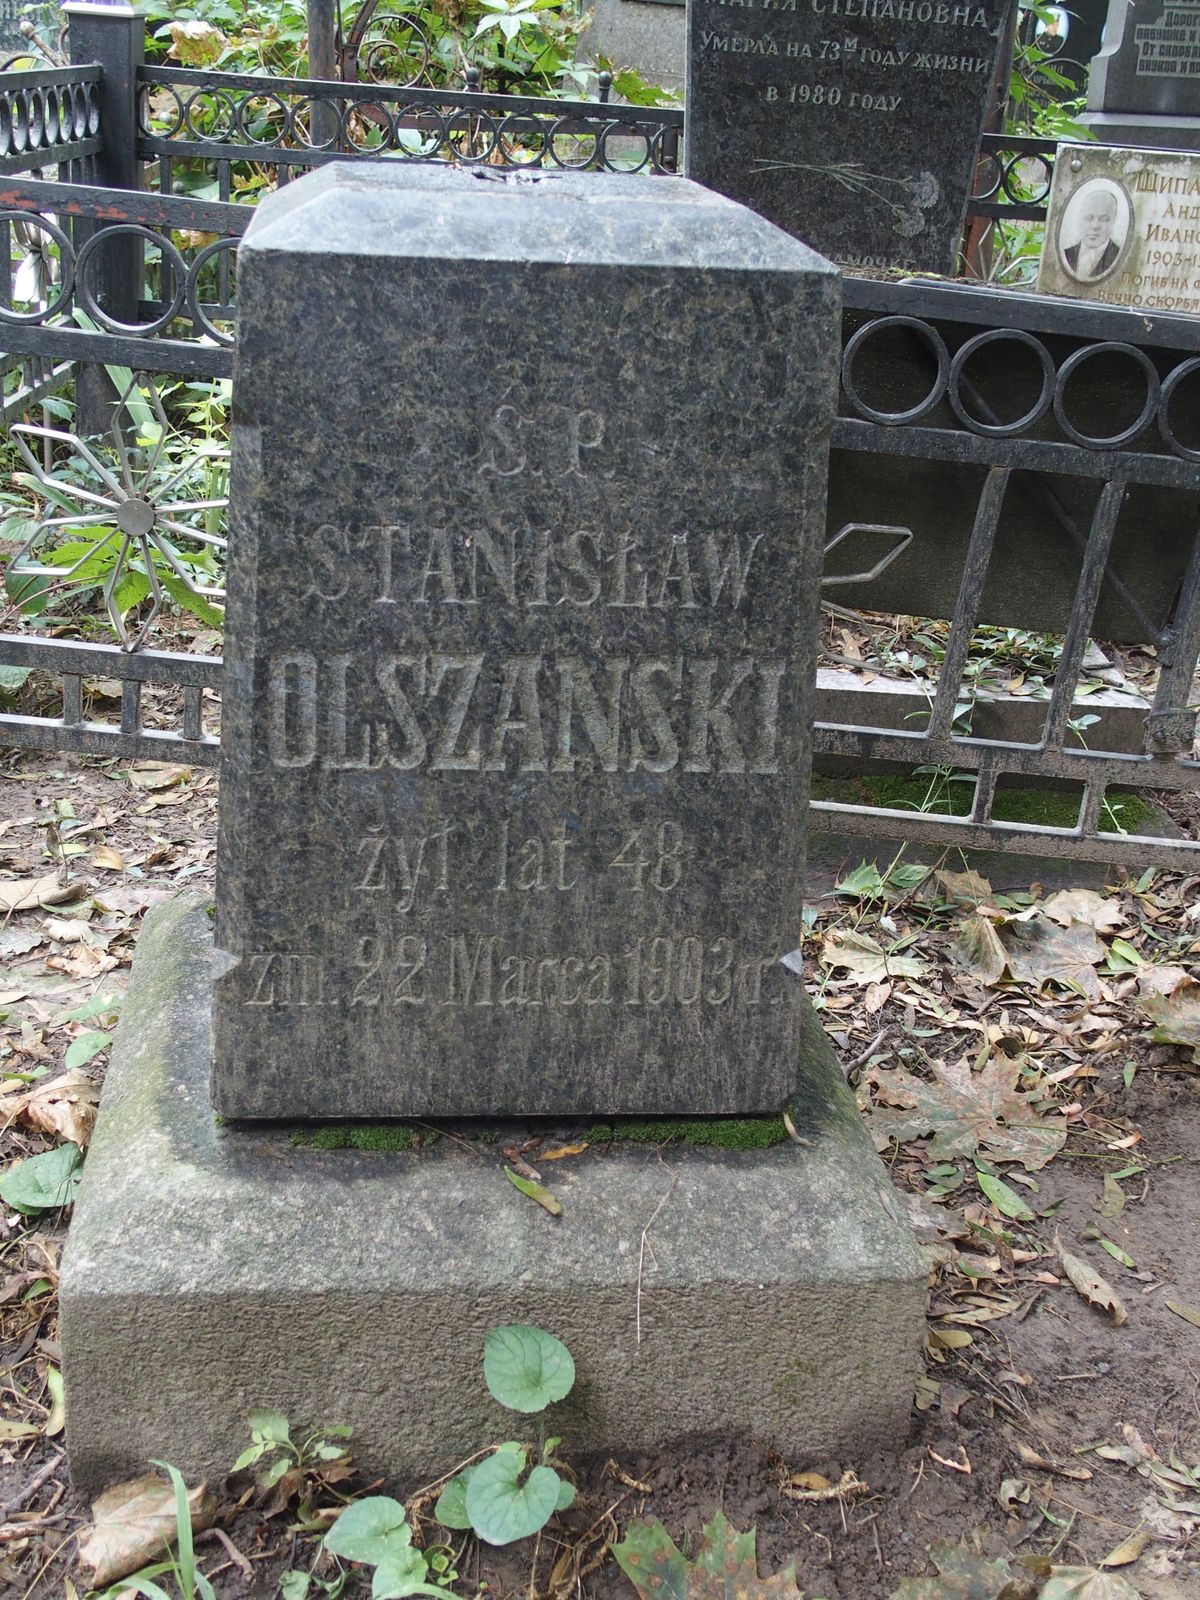 Nagrobek Stanisława Olszańskiego, cmentarz Bajkowa w Kijowie, stan z 2021